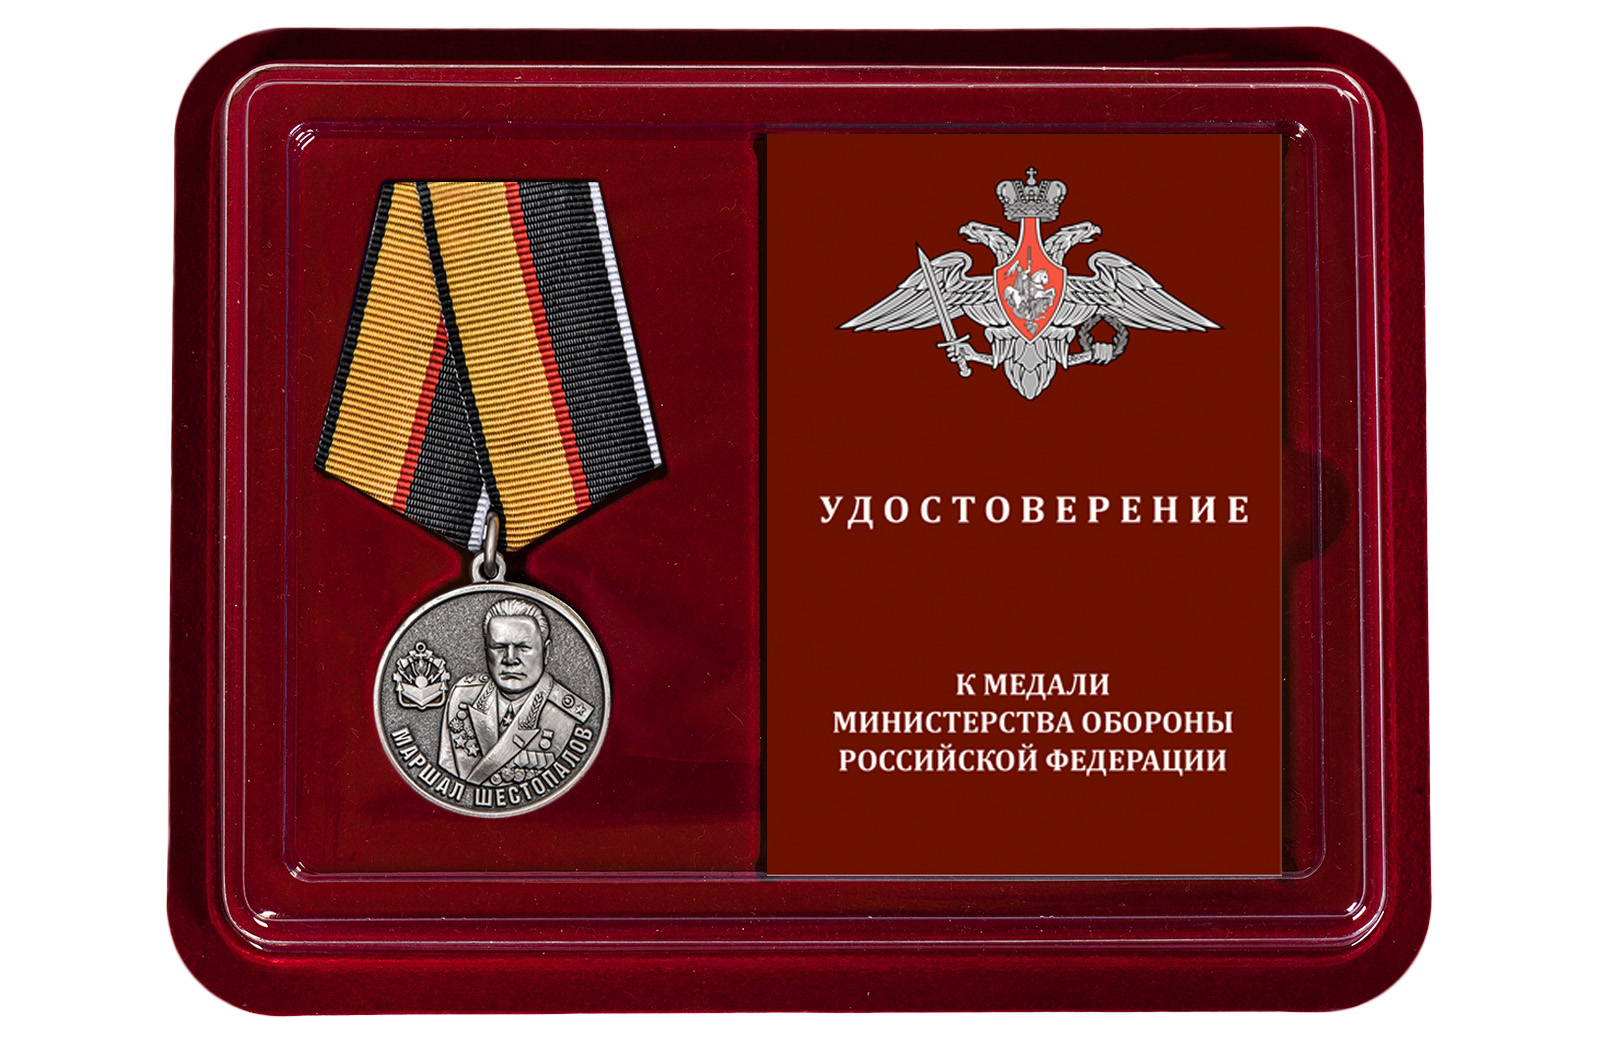 Купить медаль Маршал Шестопалов МО РФ с безопасной доставкой